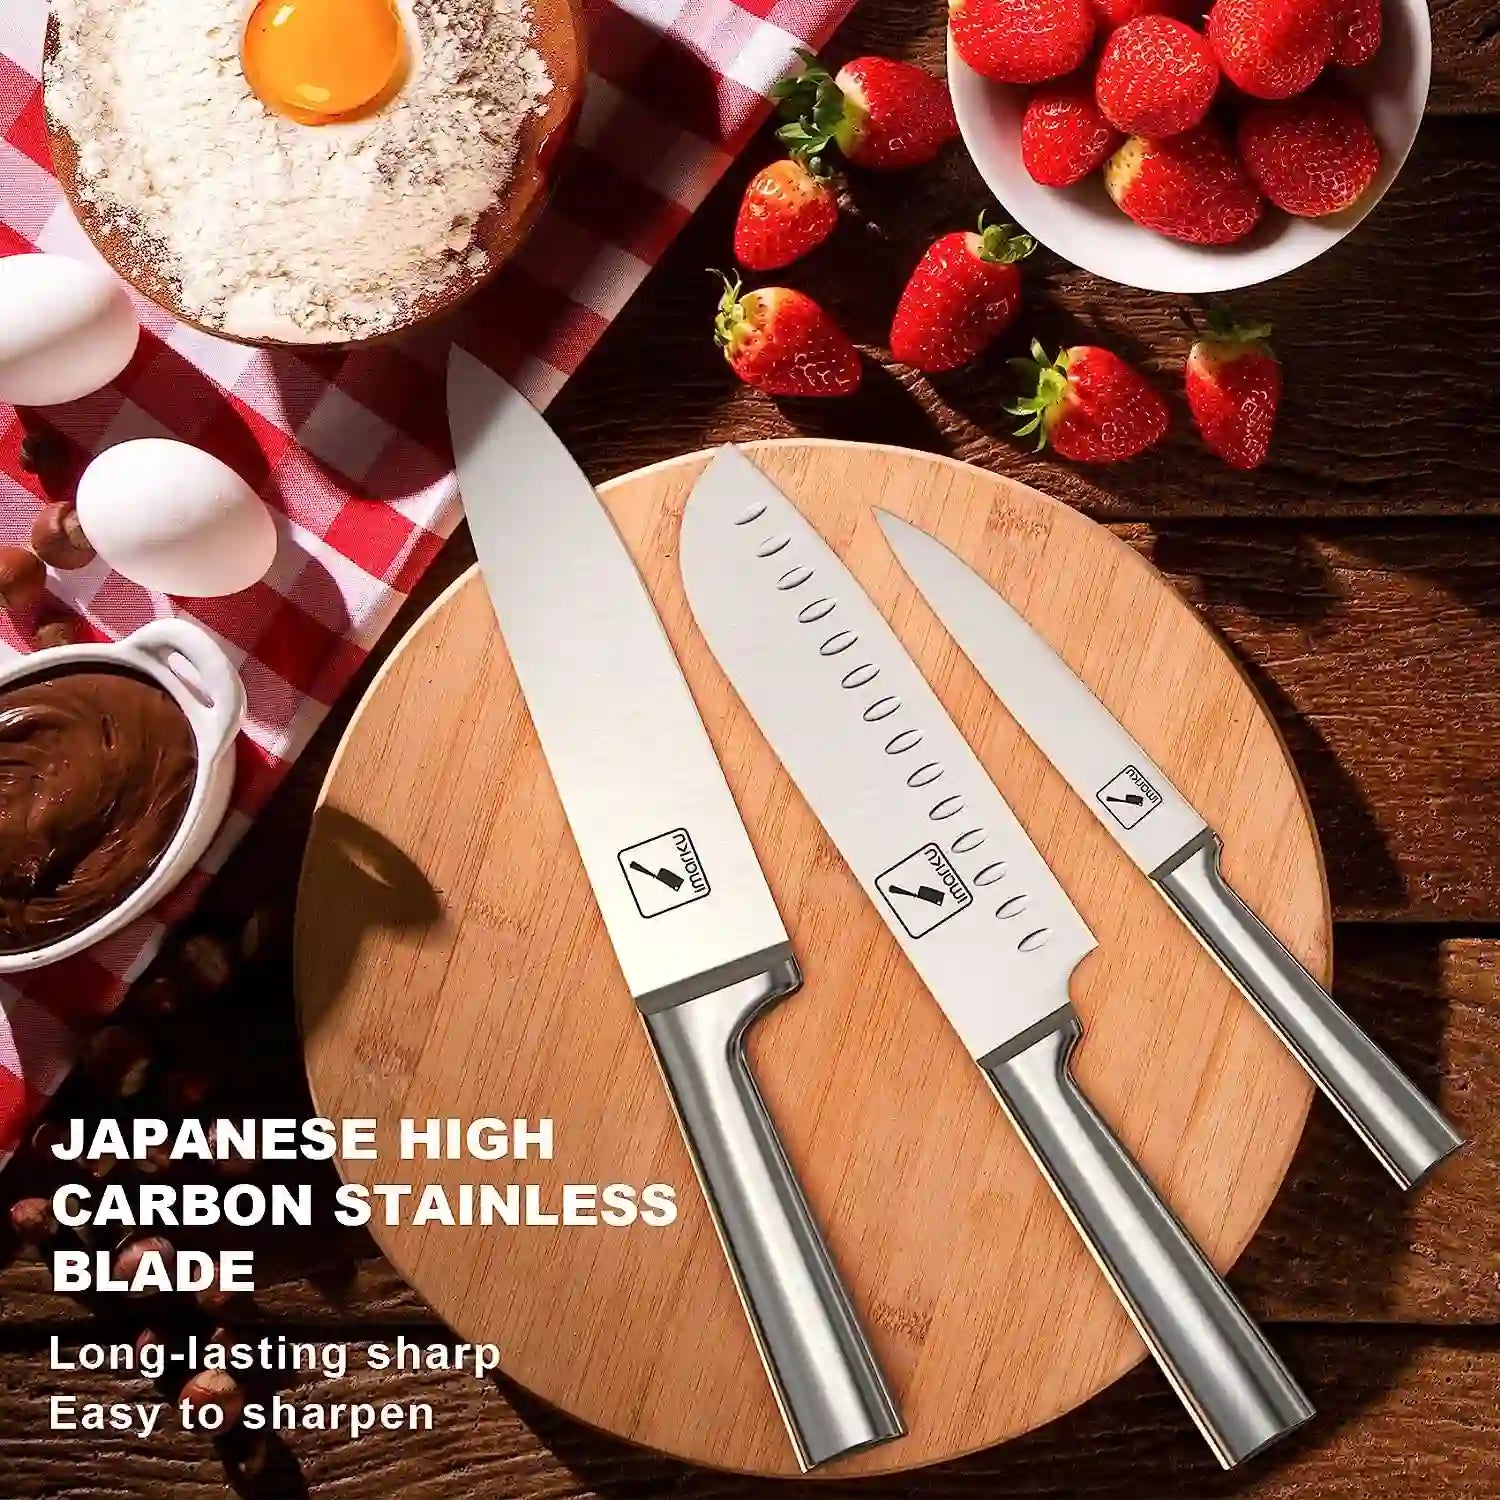 Dishewasher-safe 16-Piece Kitchen Knife Set, Easy Maintenance - Default  Title - IMARKU